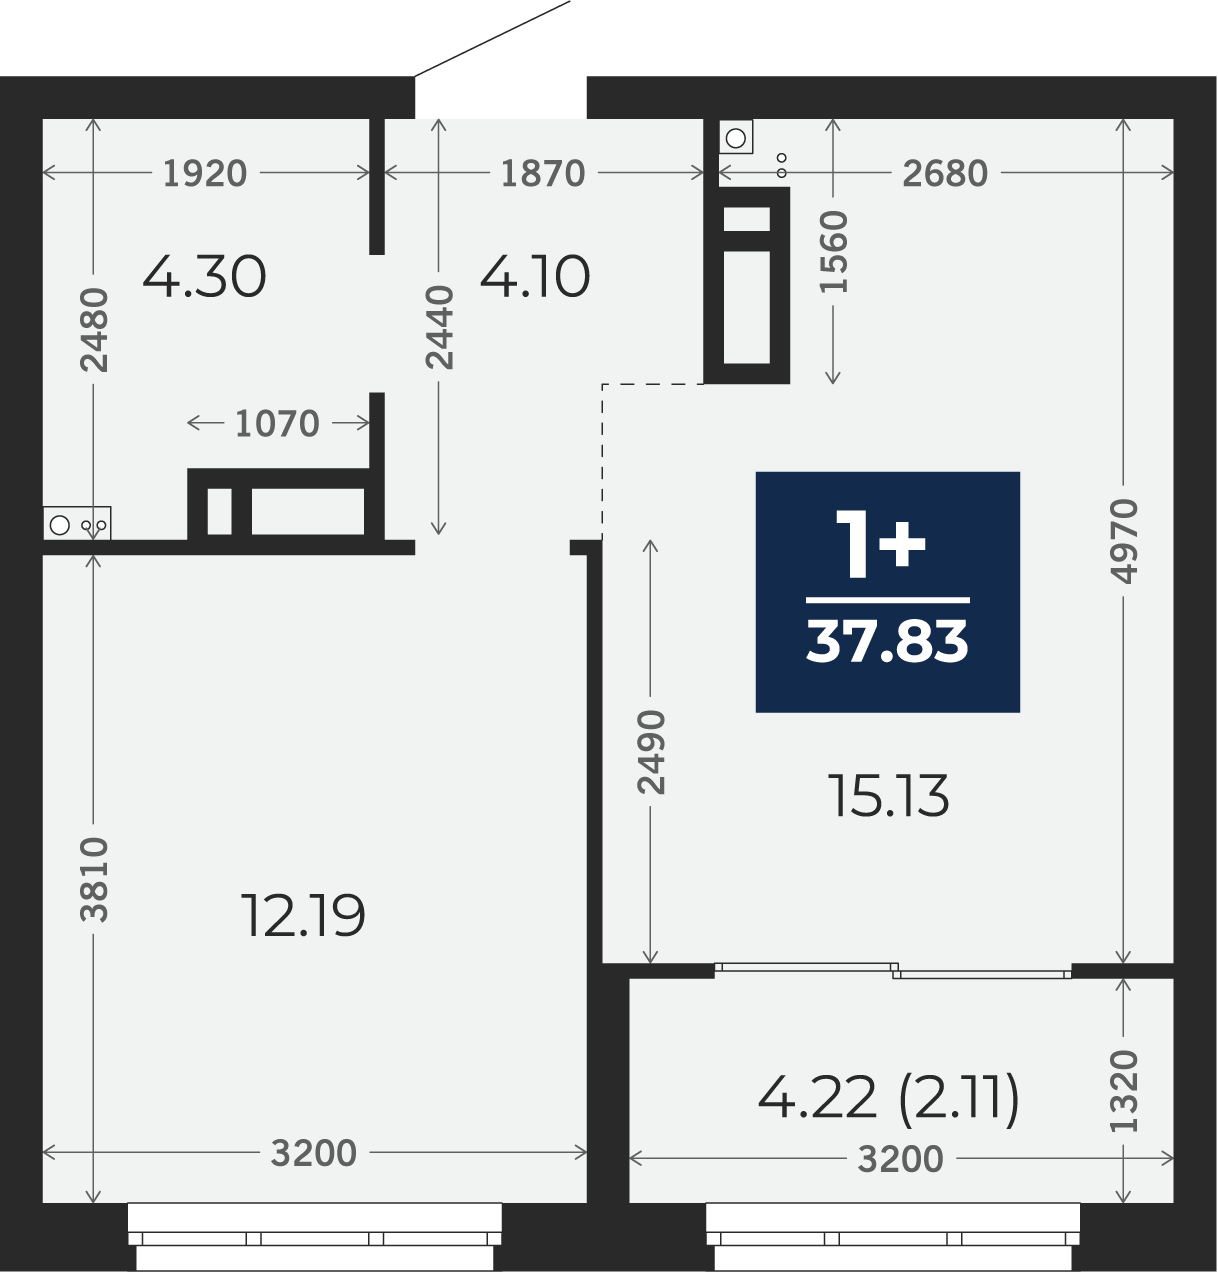 Квартира № 276, 1-комнатная, 37.83 кв. м, 11 этаж